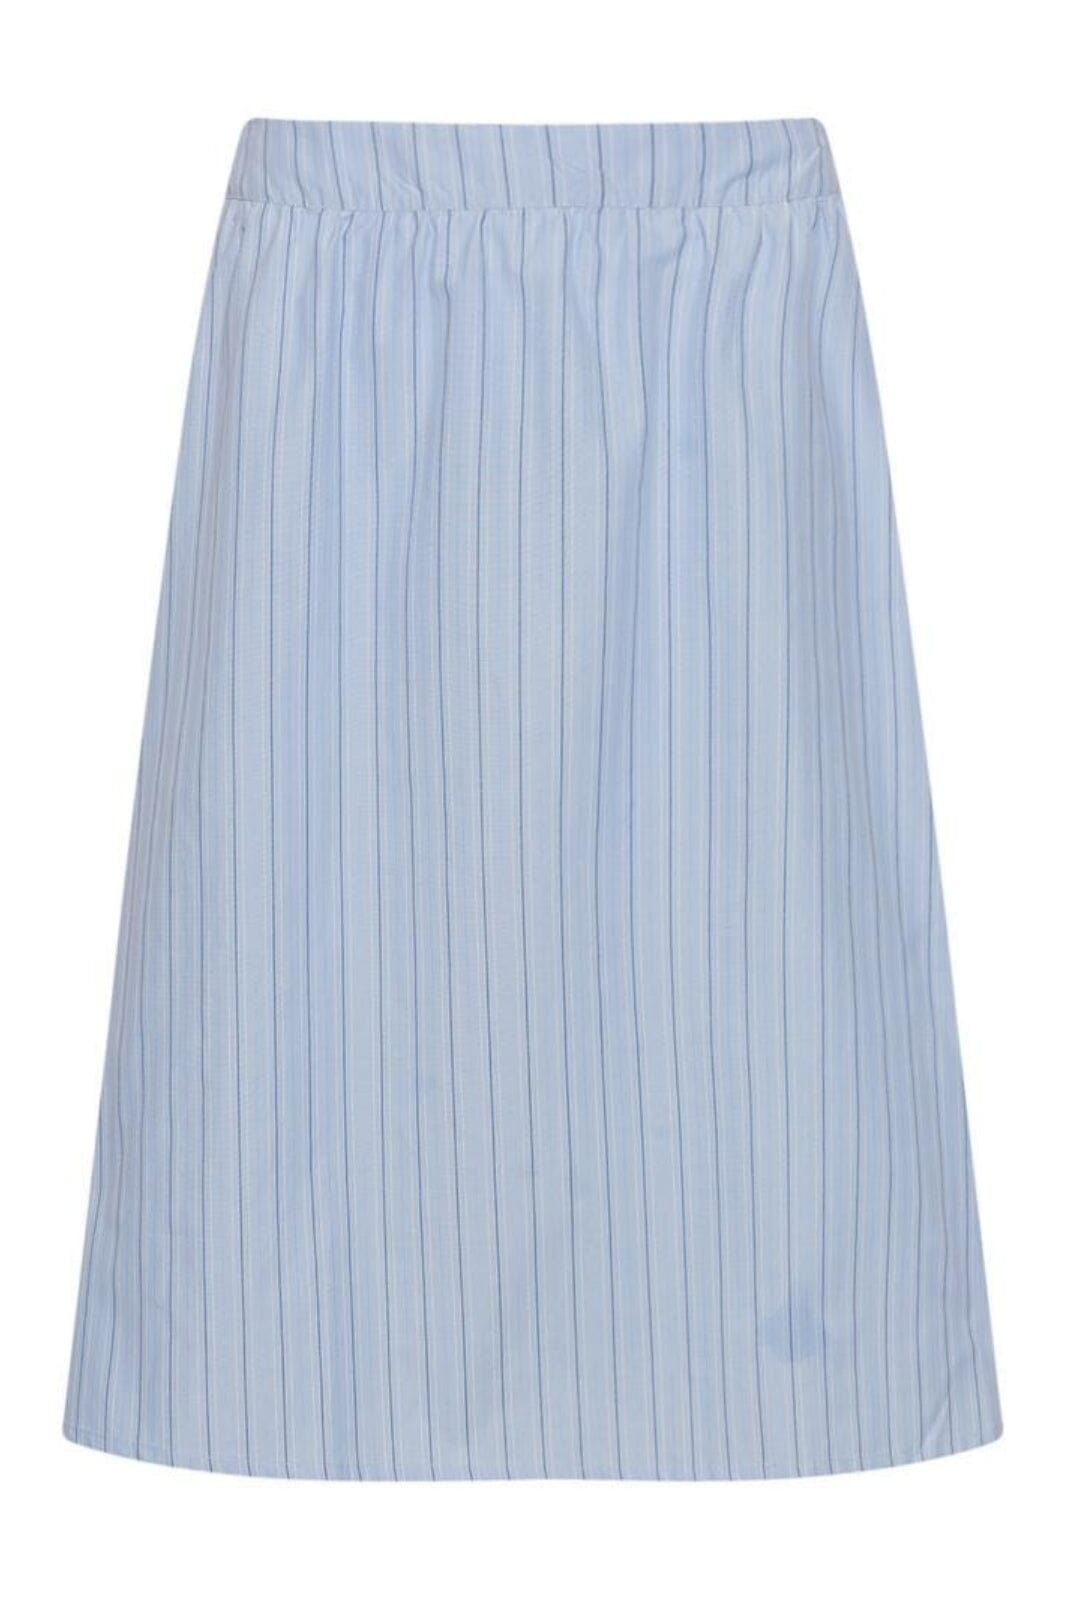 Noella - Sally Skirt - Light Blue Stripe Nederdele 